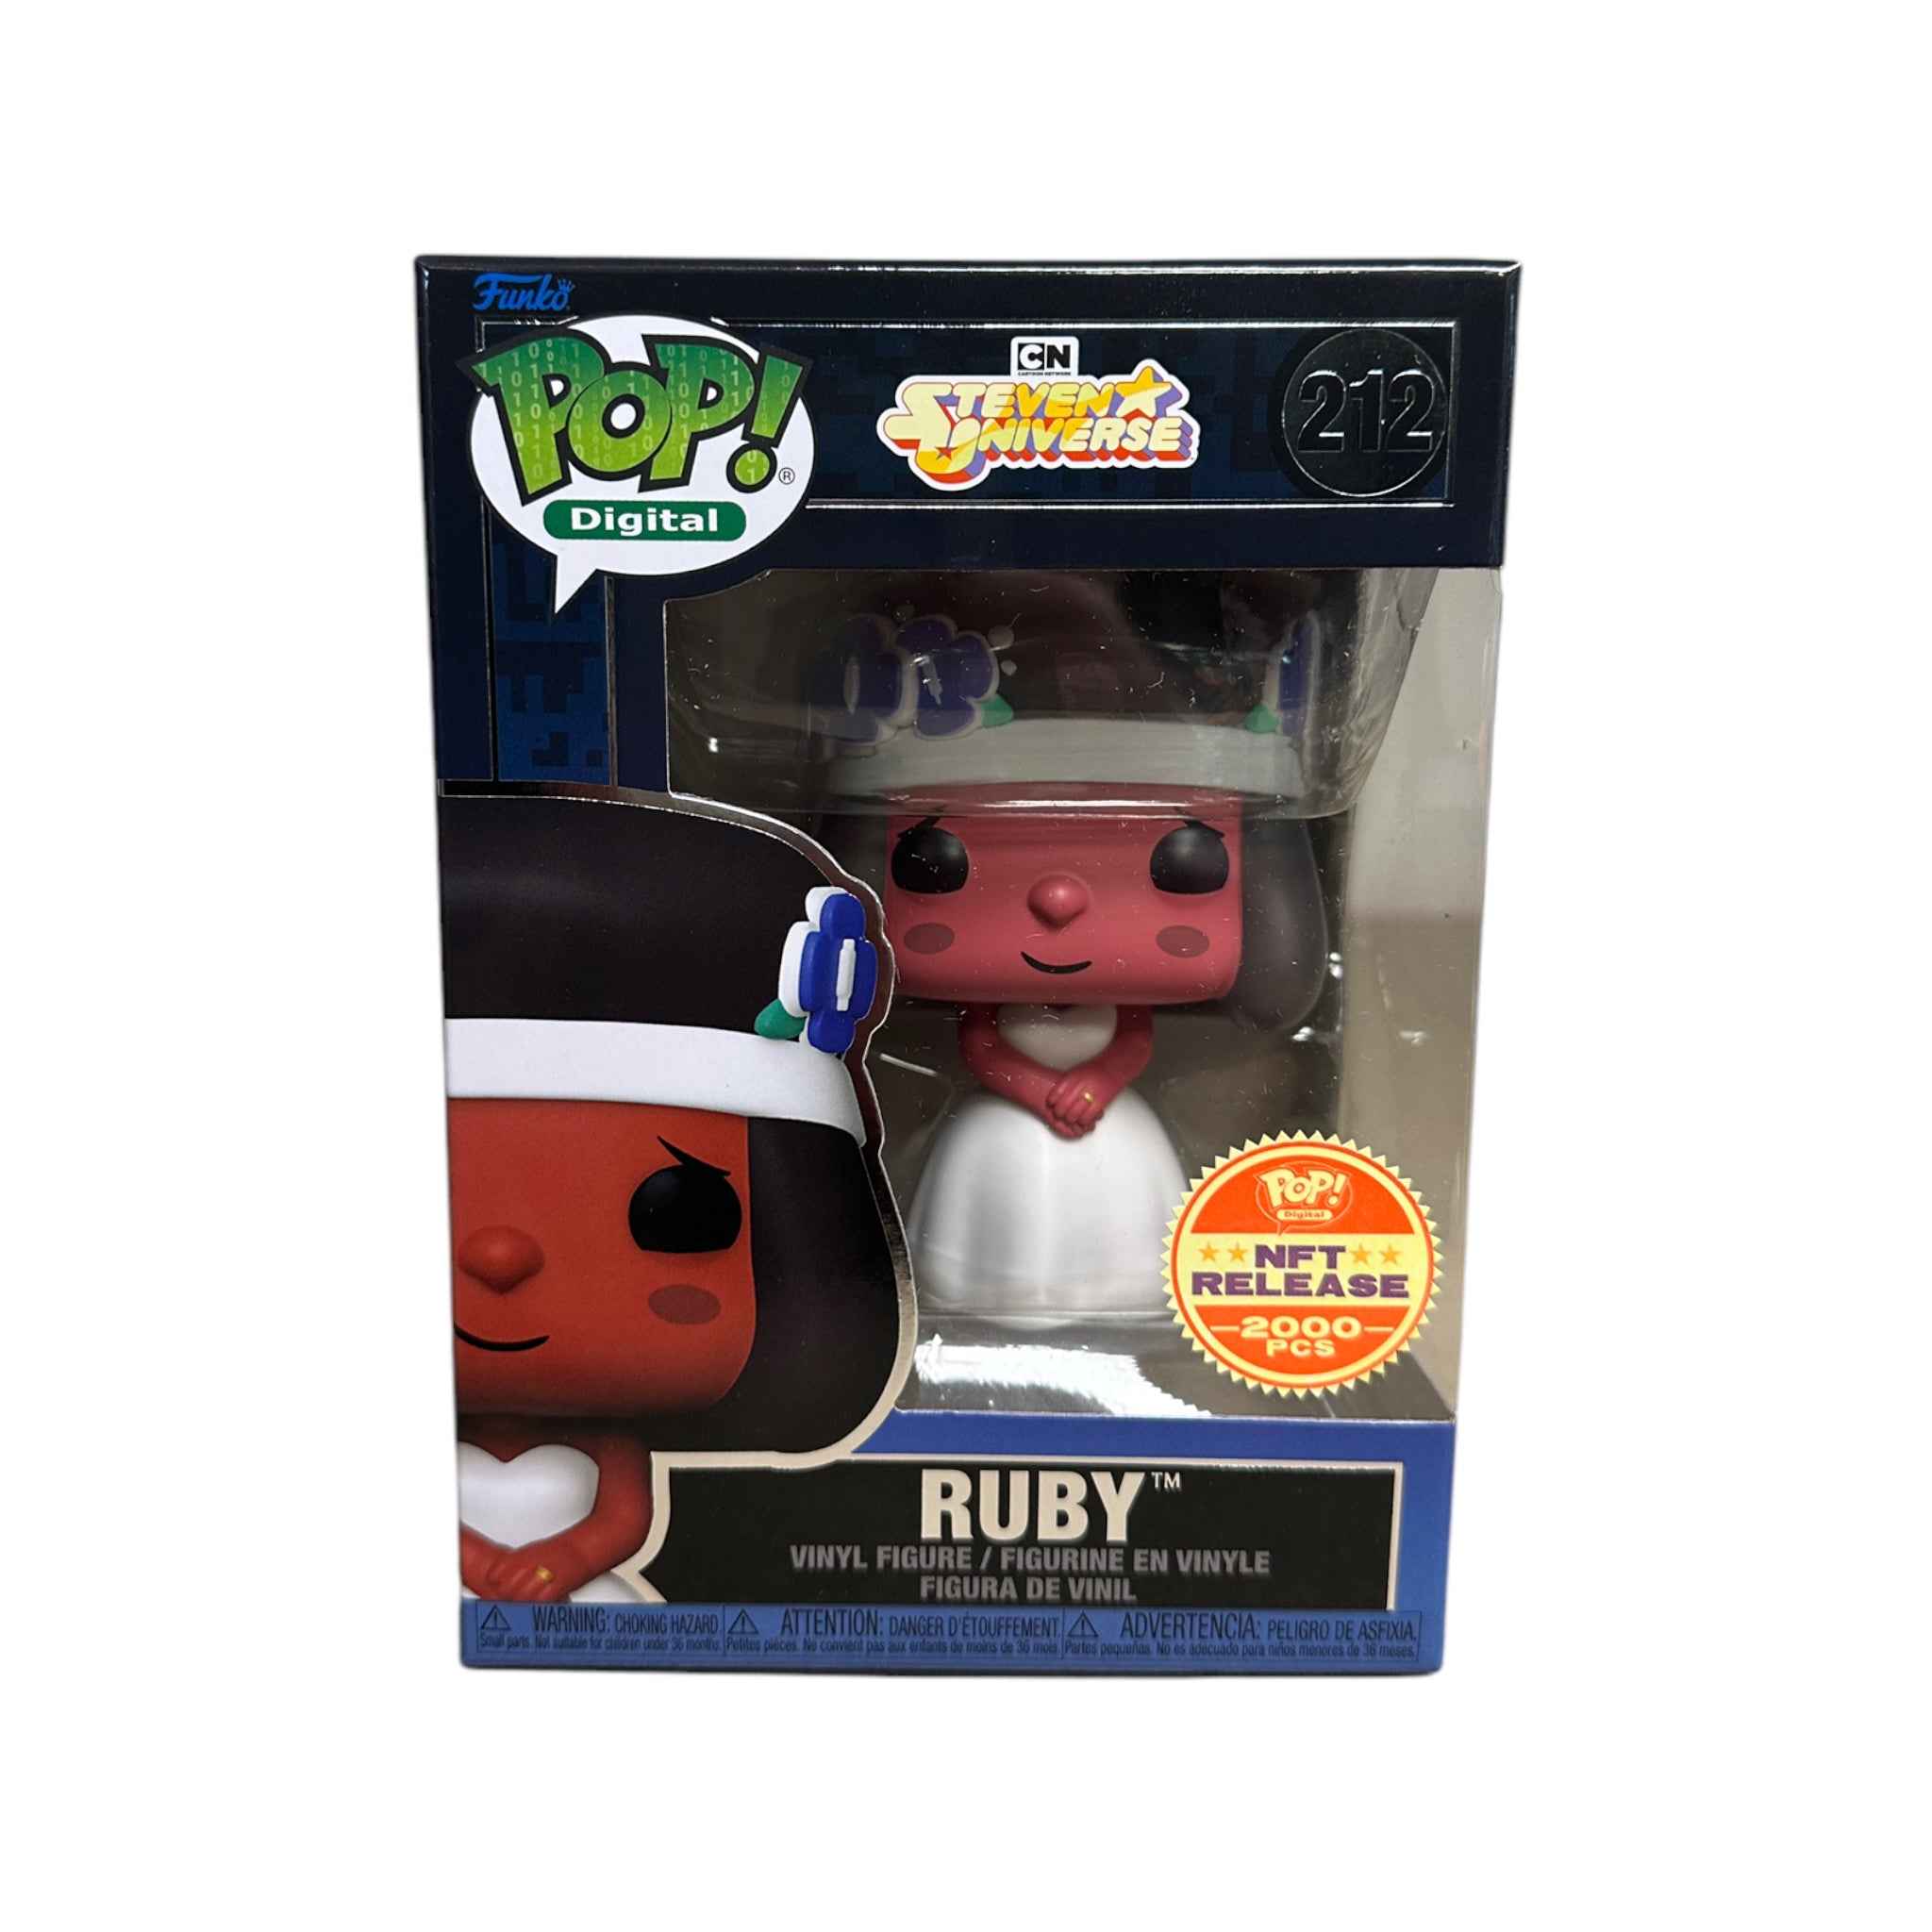 Ruby #212 Funko Pop! - Steven Universe - NFT Release Exclusive LE2000 Pcs - Condition 8.75/10